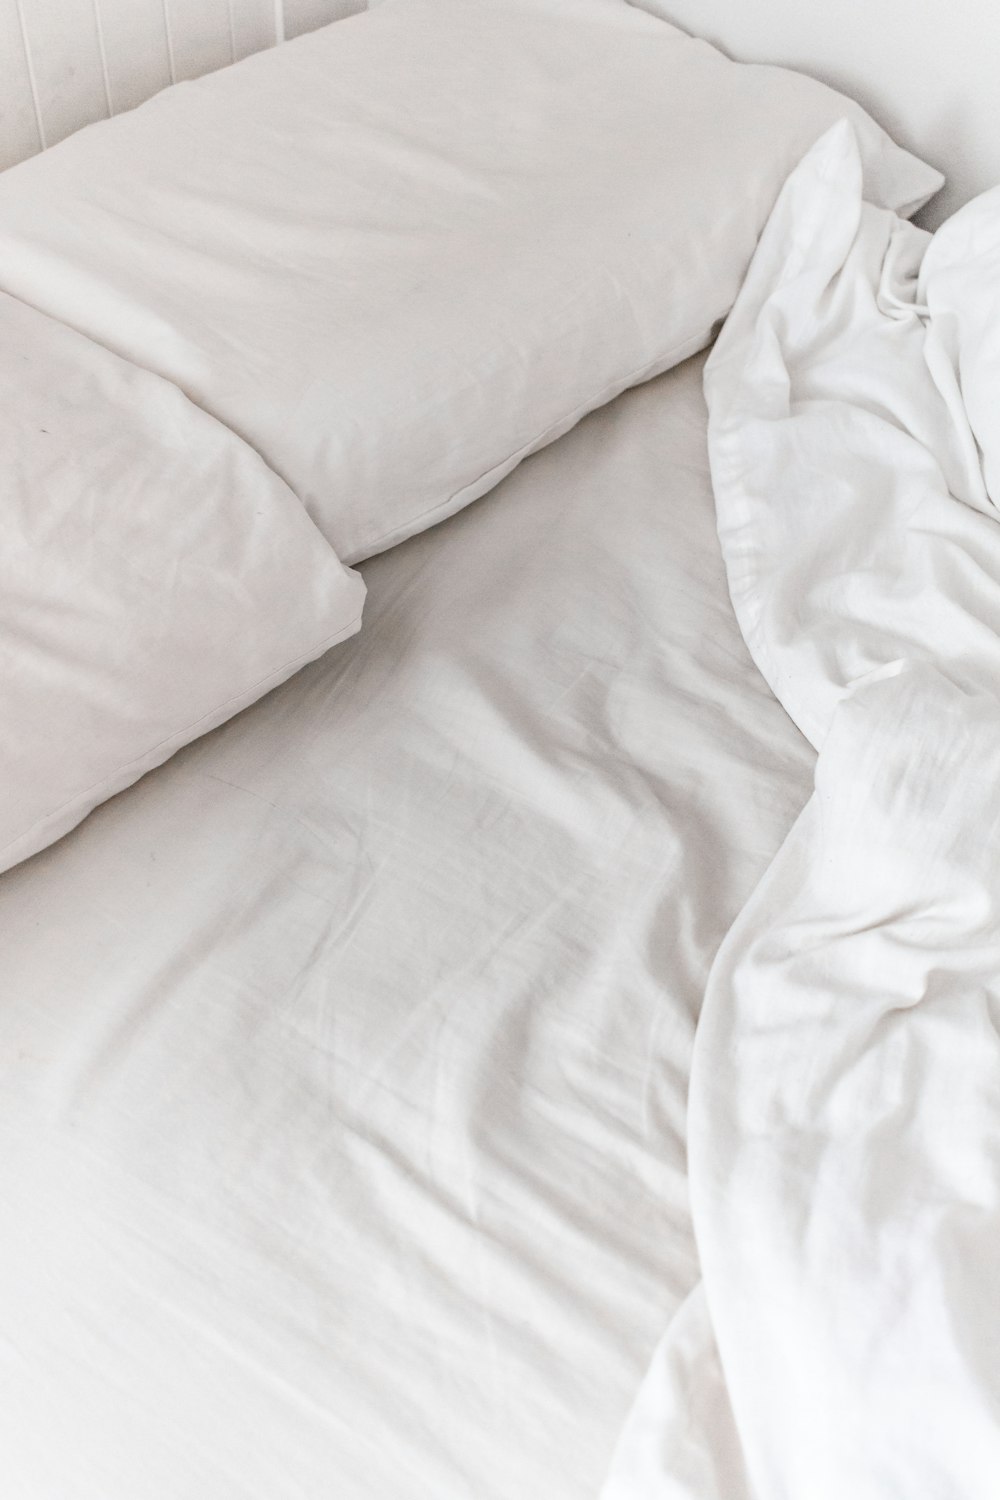 white textile on white bed